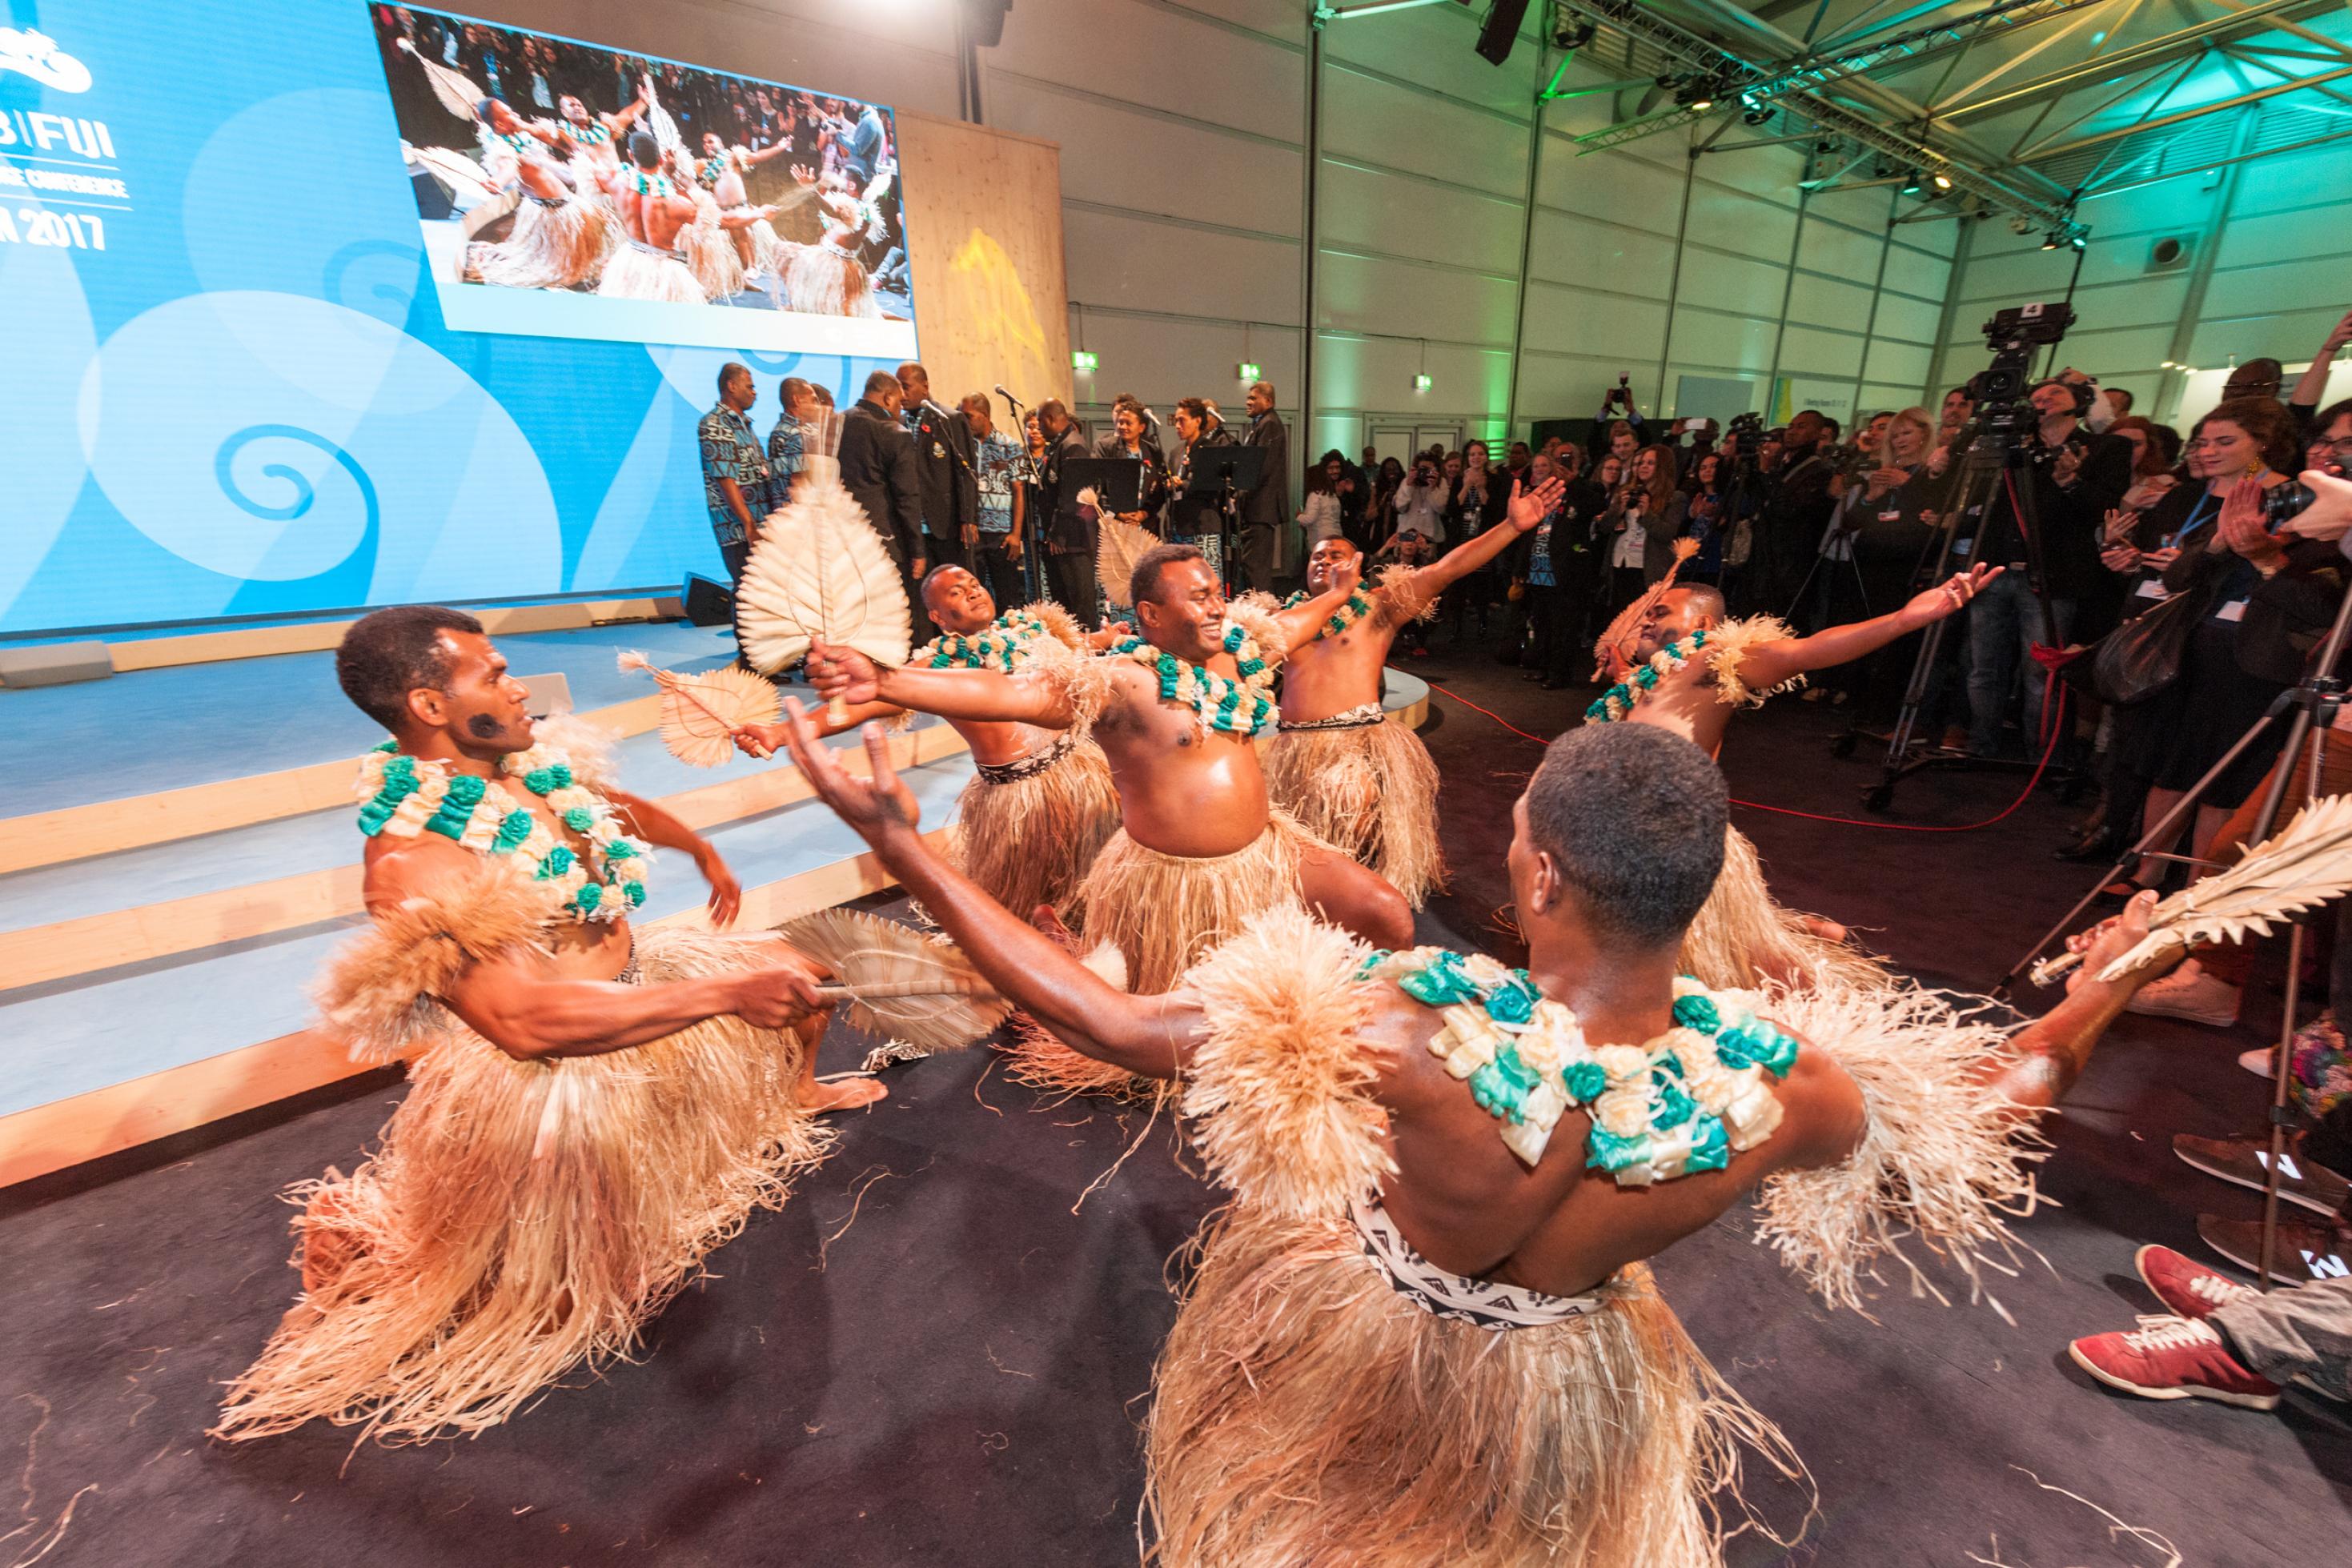 Eine Gruppe von Männern mit Baströcken, nackten Oberkörpern und blau-weißen Blütenkränzen am Hals dreht sich mit halbhoch erhobenen Armen im Kreis: Polynesische Tänzer bei einem Empfang während der COP in Bonn